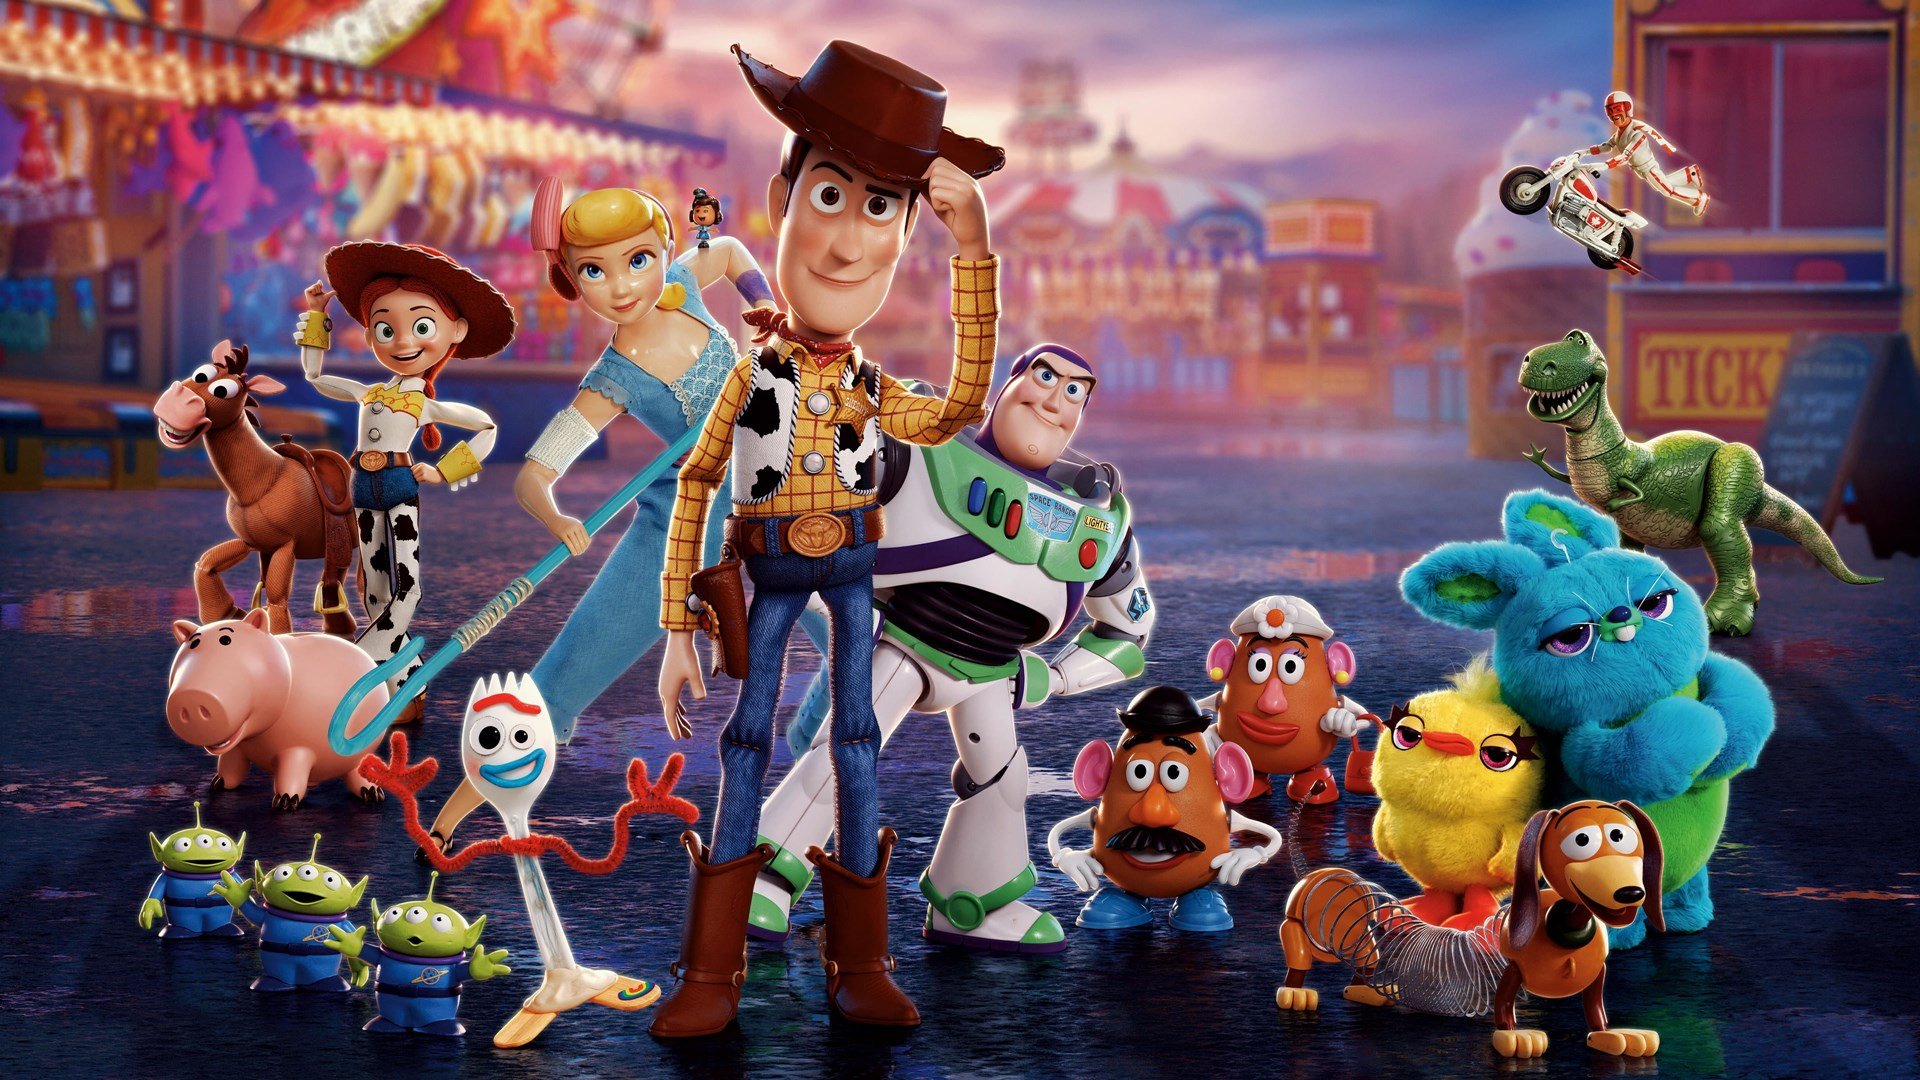 Woody és Buzz új filmje belépett a Milliárdosok Klubjába